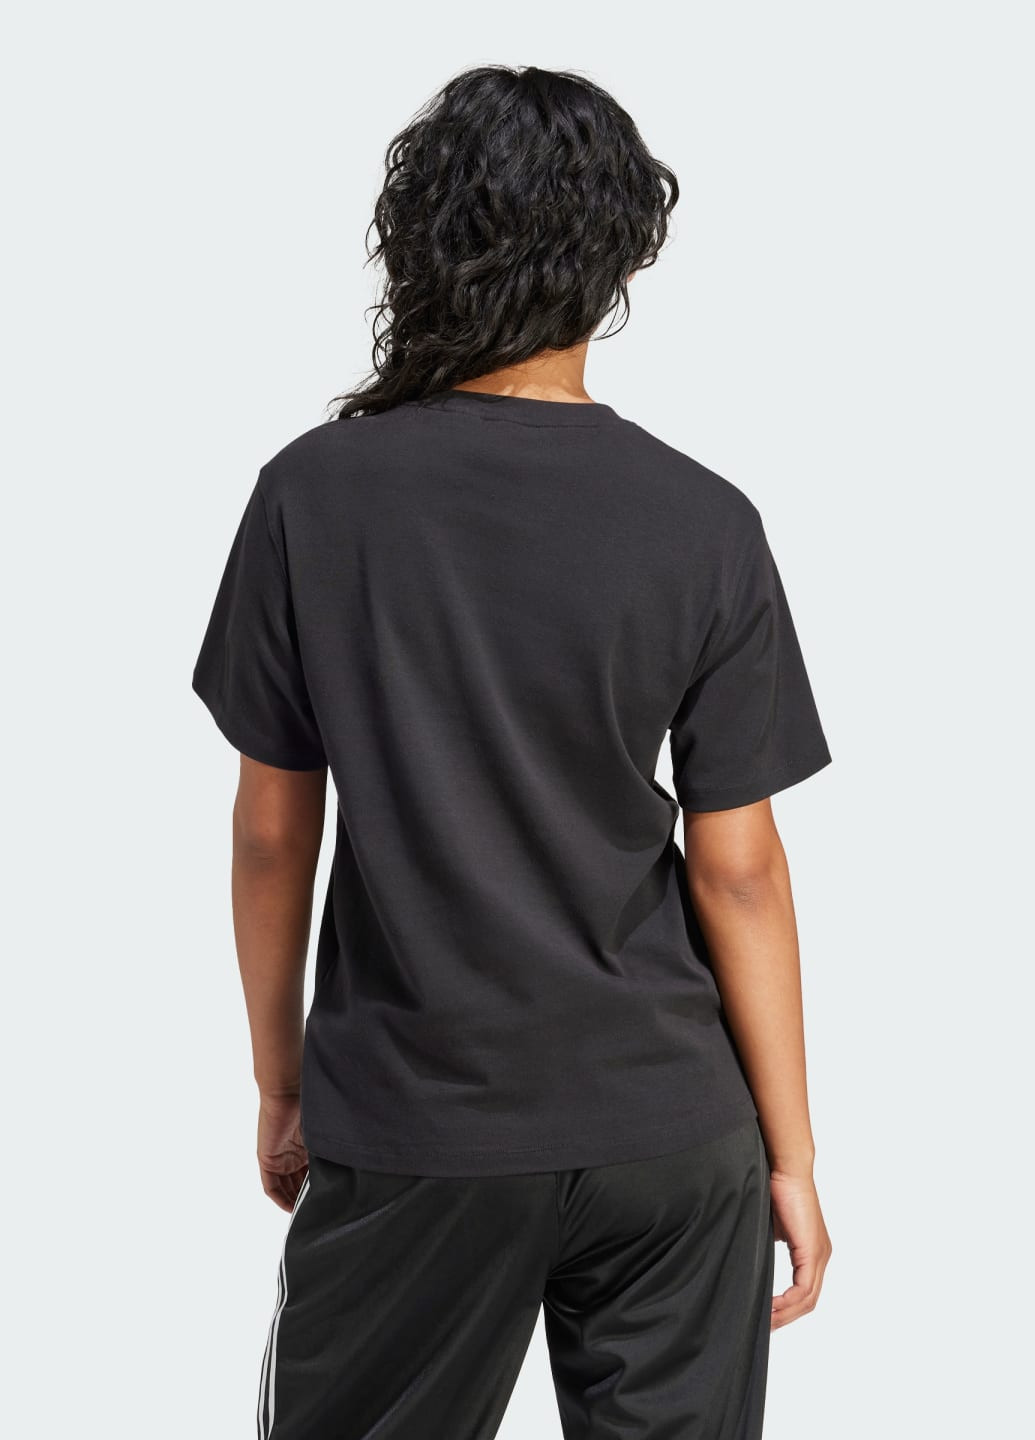 Черная всесезон футболка trefoil adidas